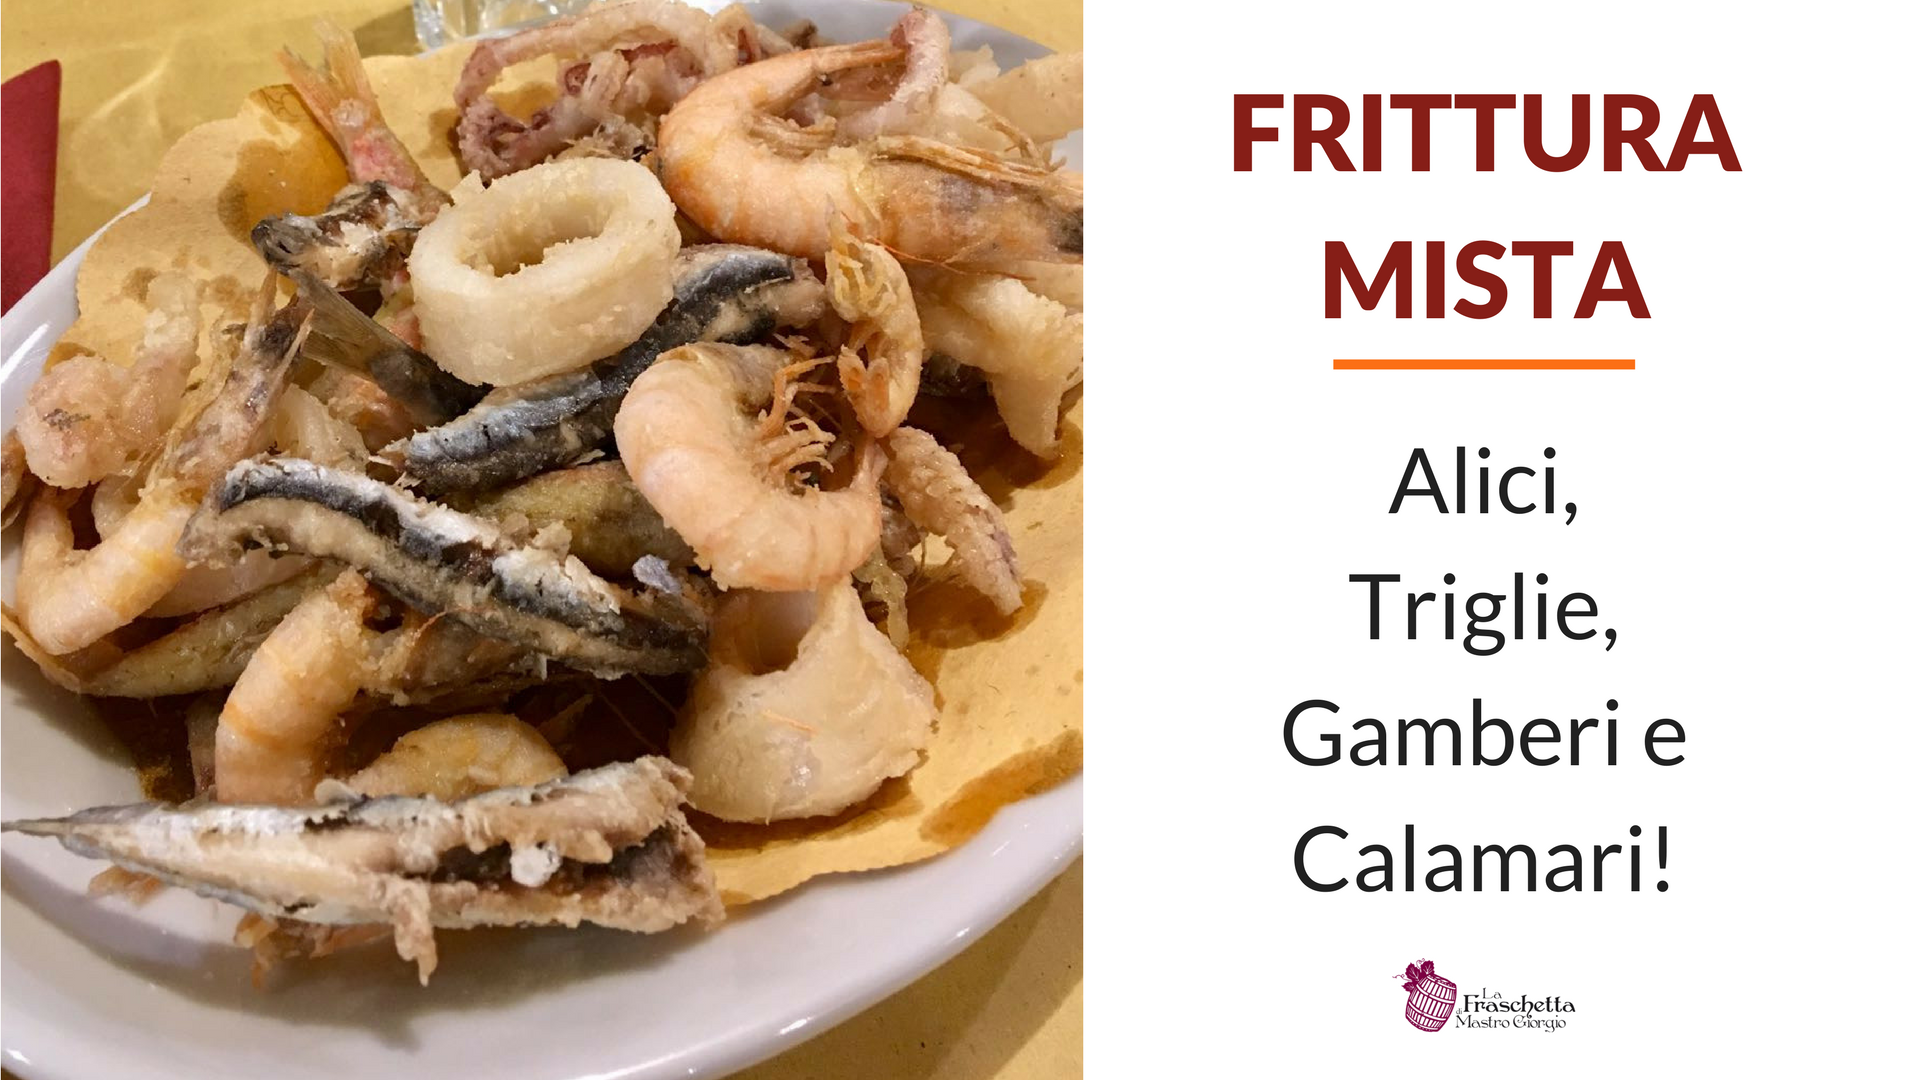 Frittura mista: Alici Triglie Gamberi e Calamari!